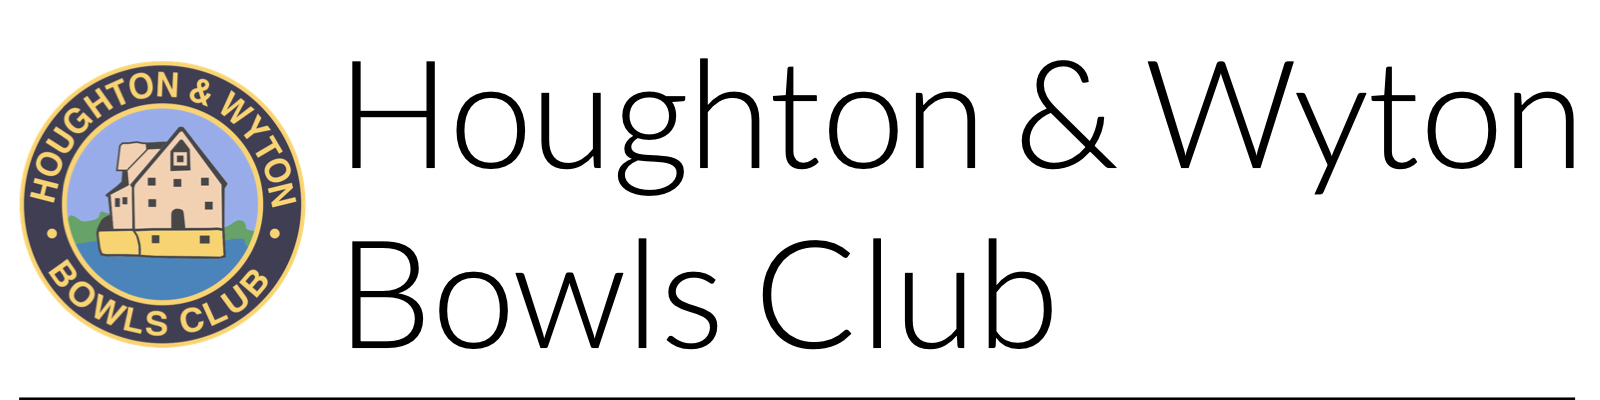 Houghton & Wyton Bowls Club